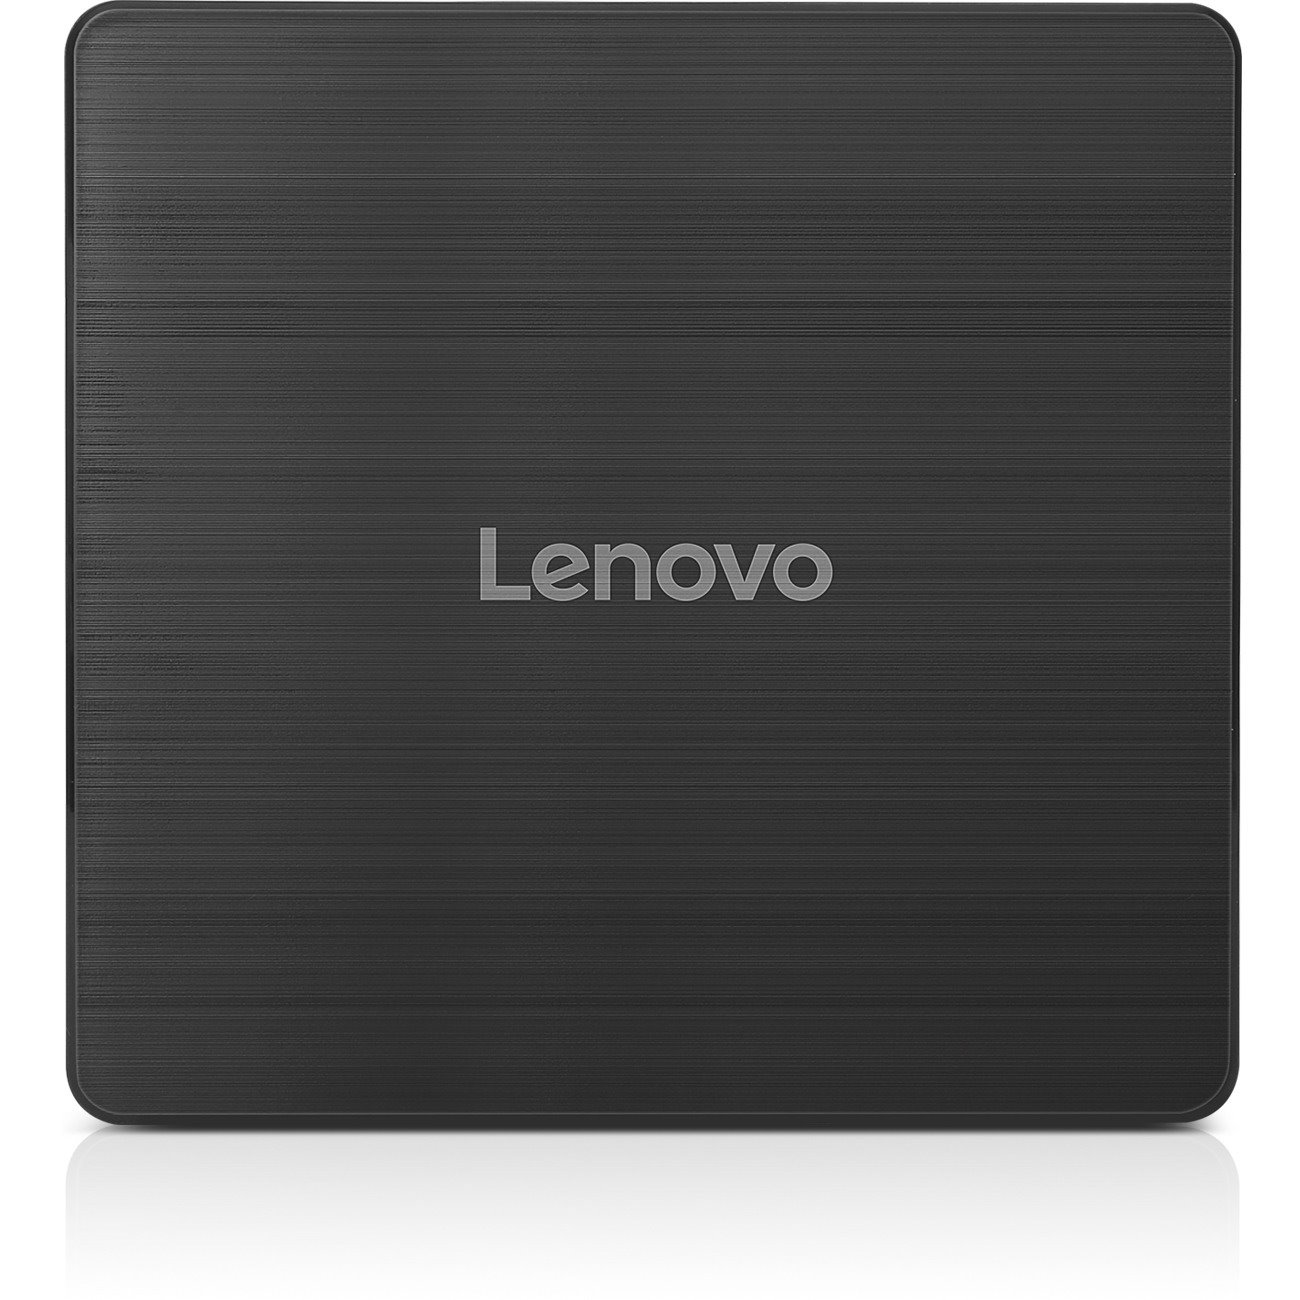 Lenovo DVD-Writer - Retail Pack